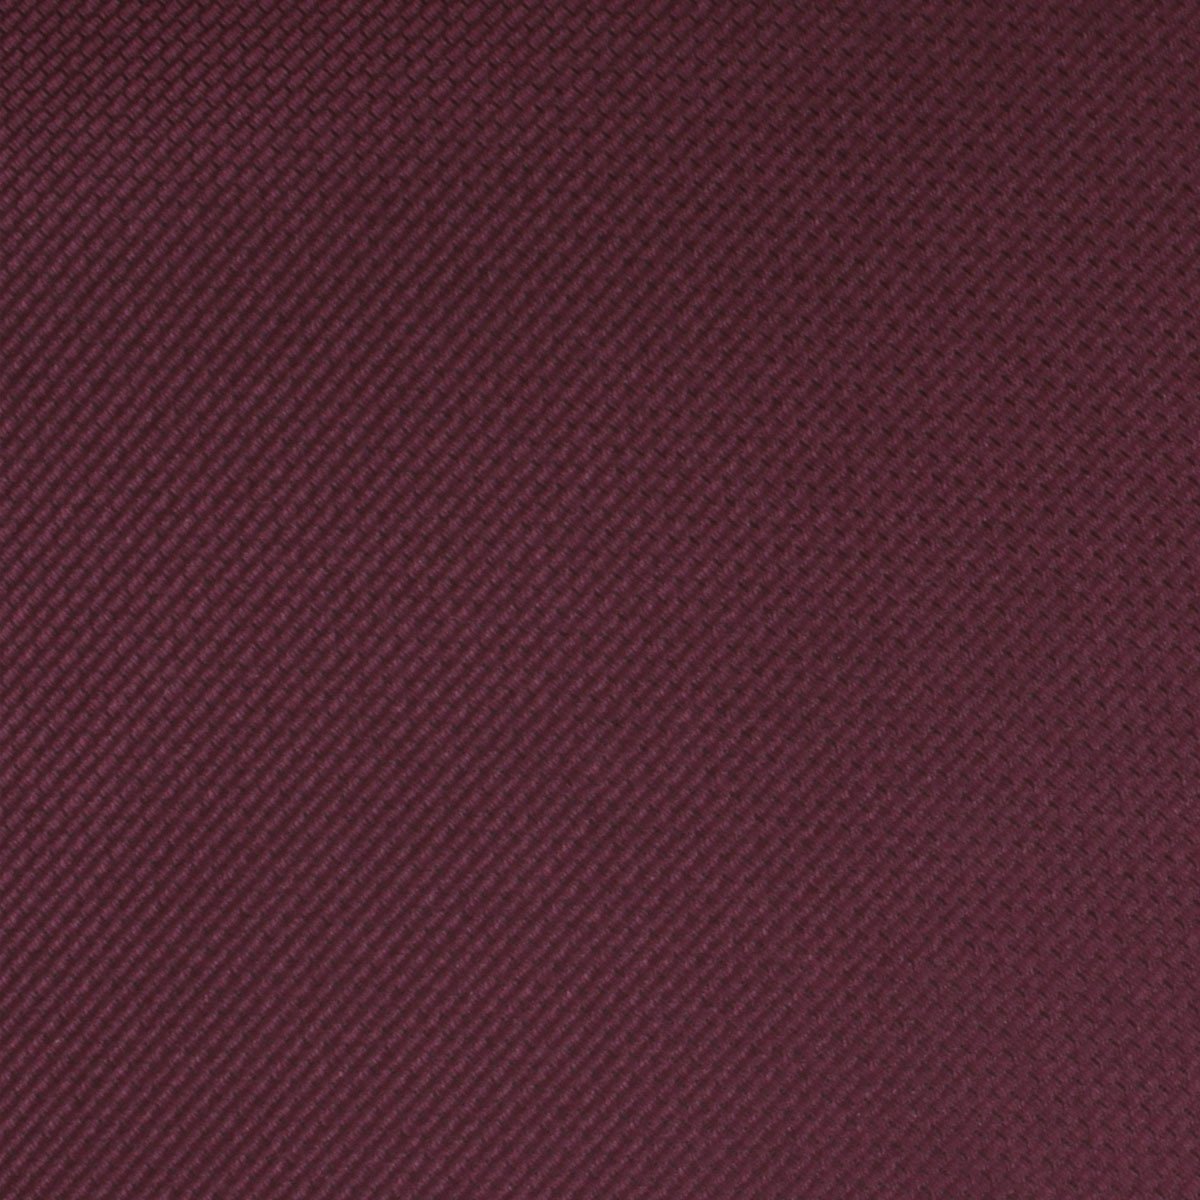 Garnet Wine Burgundy Weave Skinny Tie Fabric